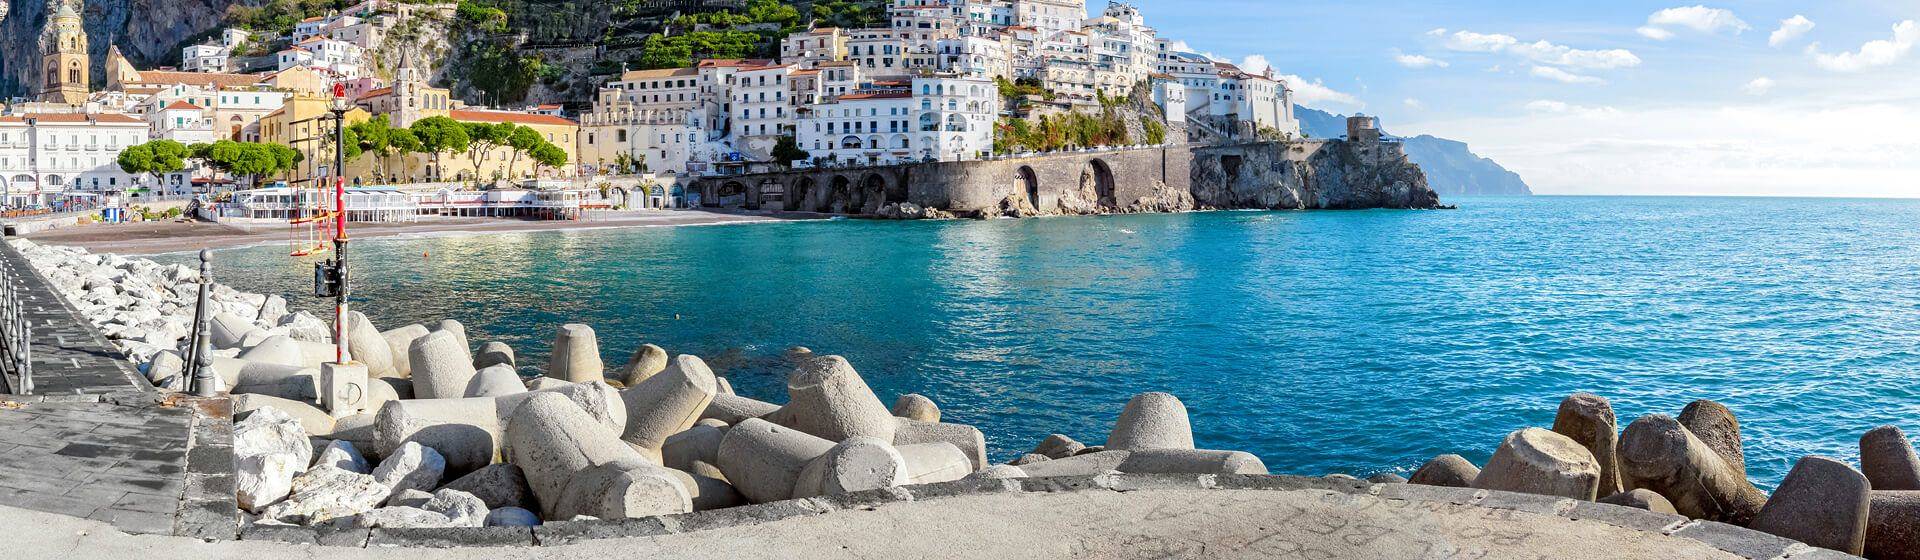 Holidays to Amalfi Image